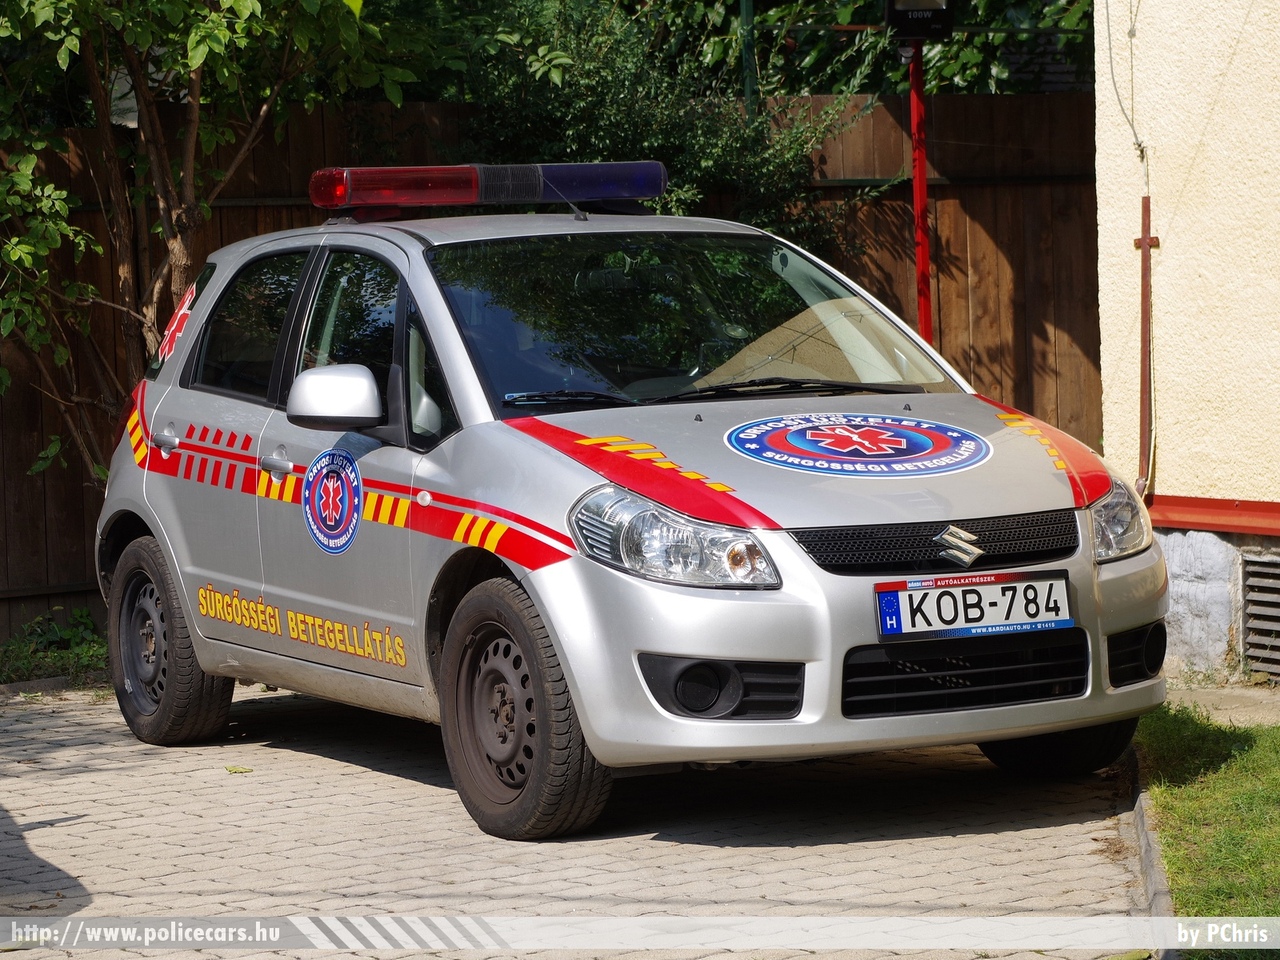 Suzuki SX4, orvosi ügyelet, fotó: PChris
Keywords: magyar Magyarország mentő mentőautó Hungary hungarian ambulance KOB-784